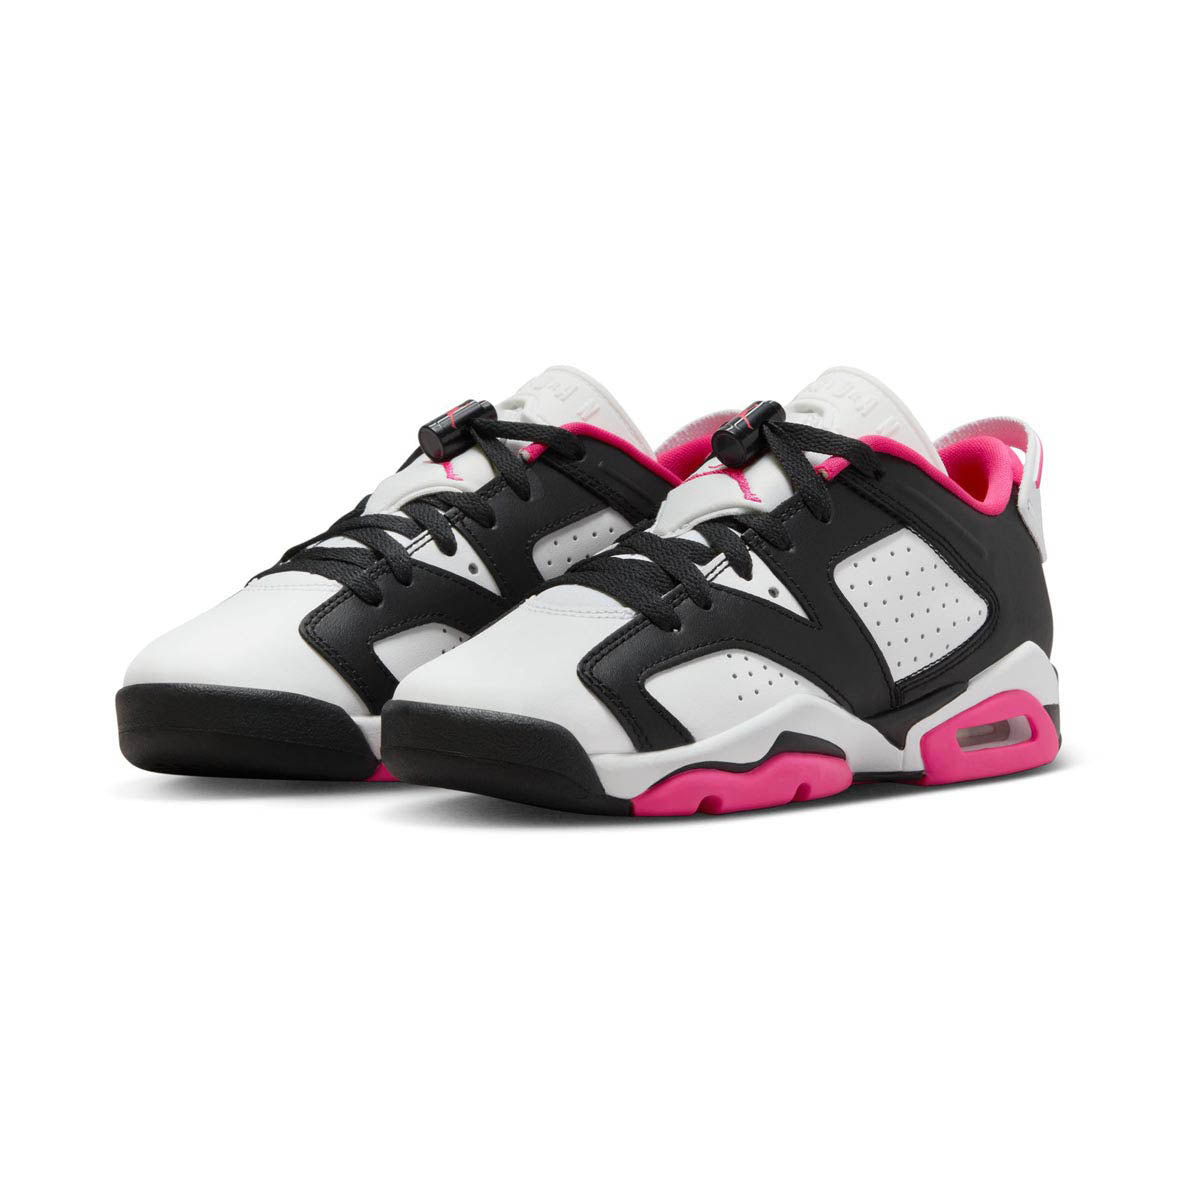 Air Jordan 6 Retro Big Kids' Shoes